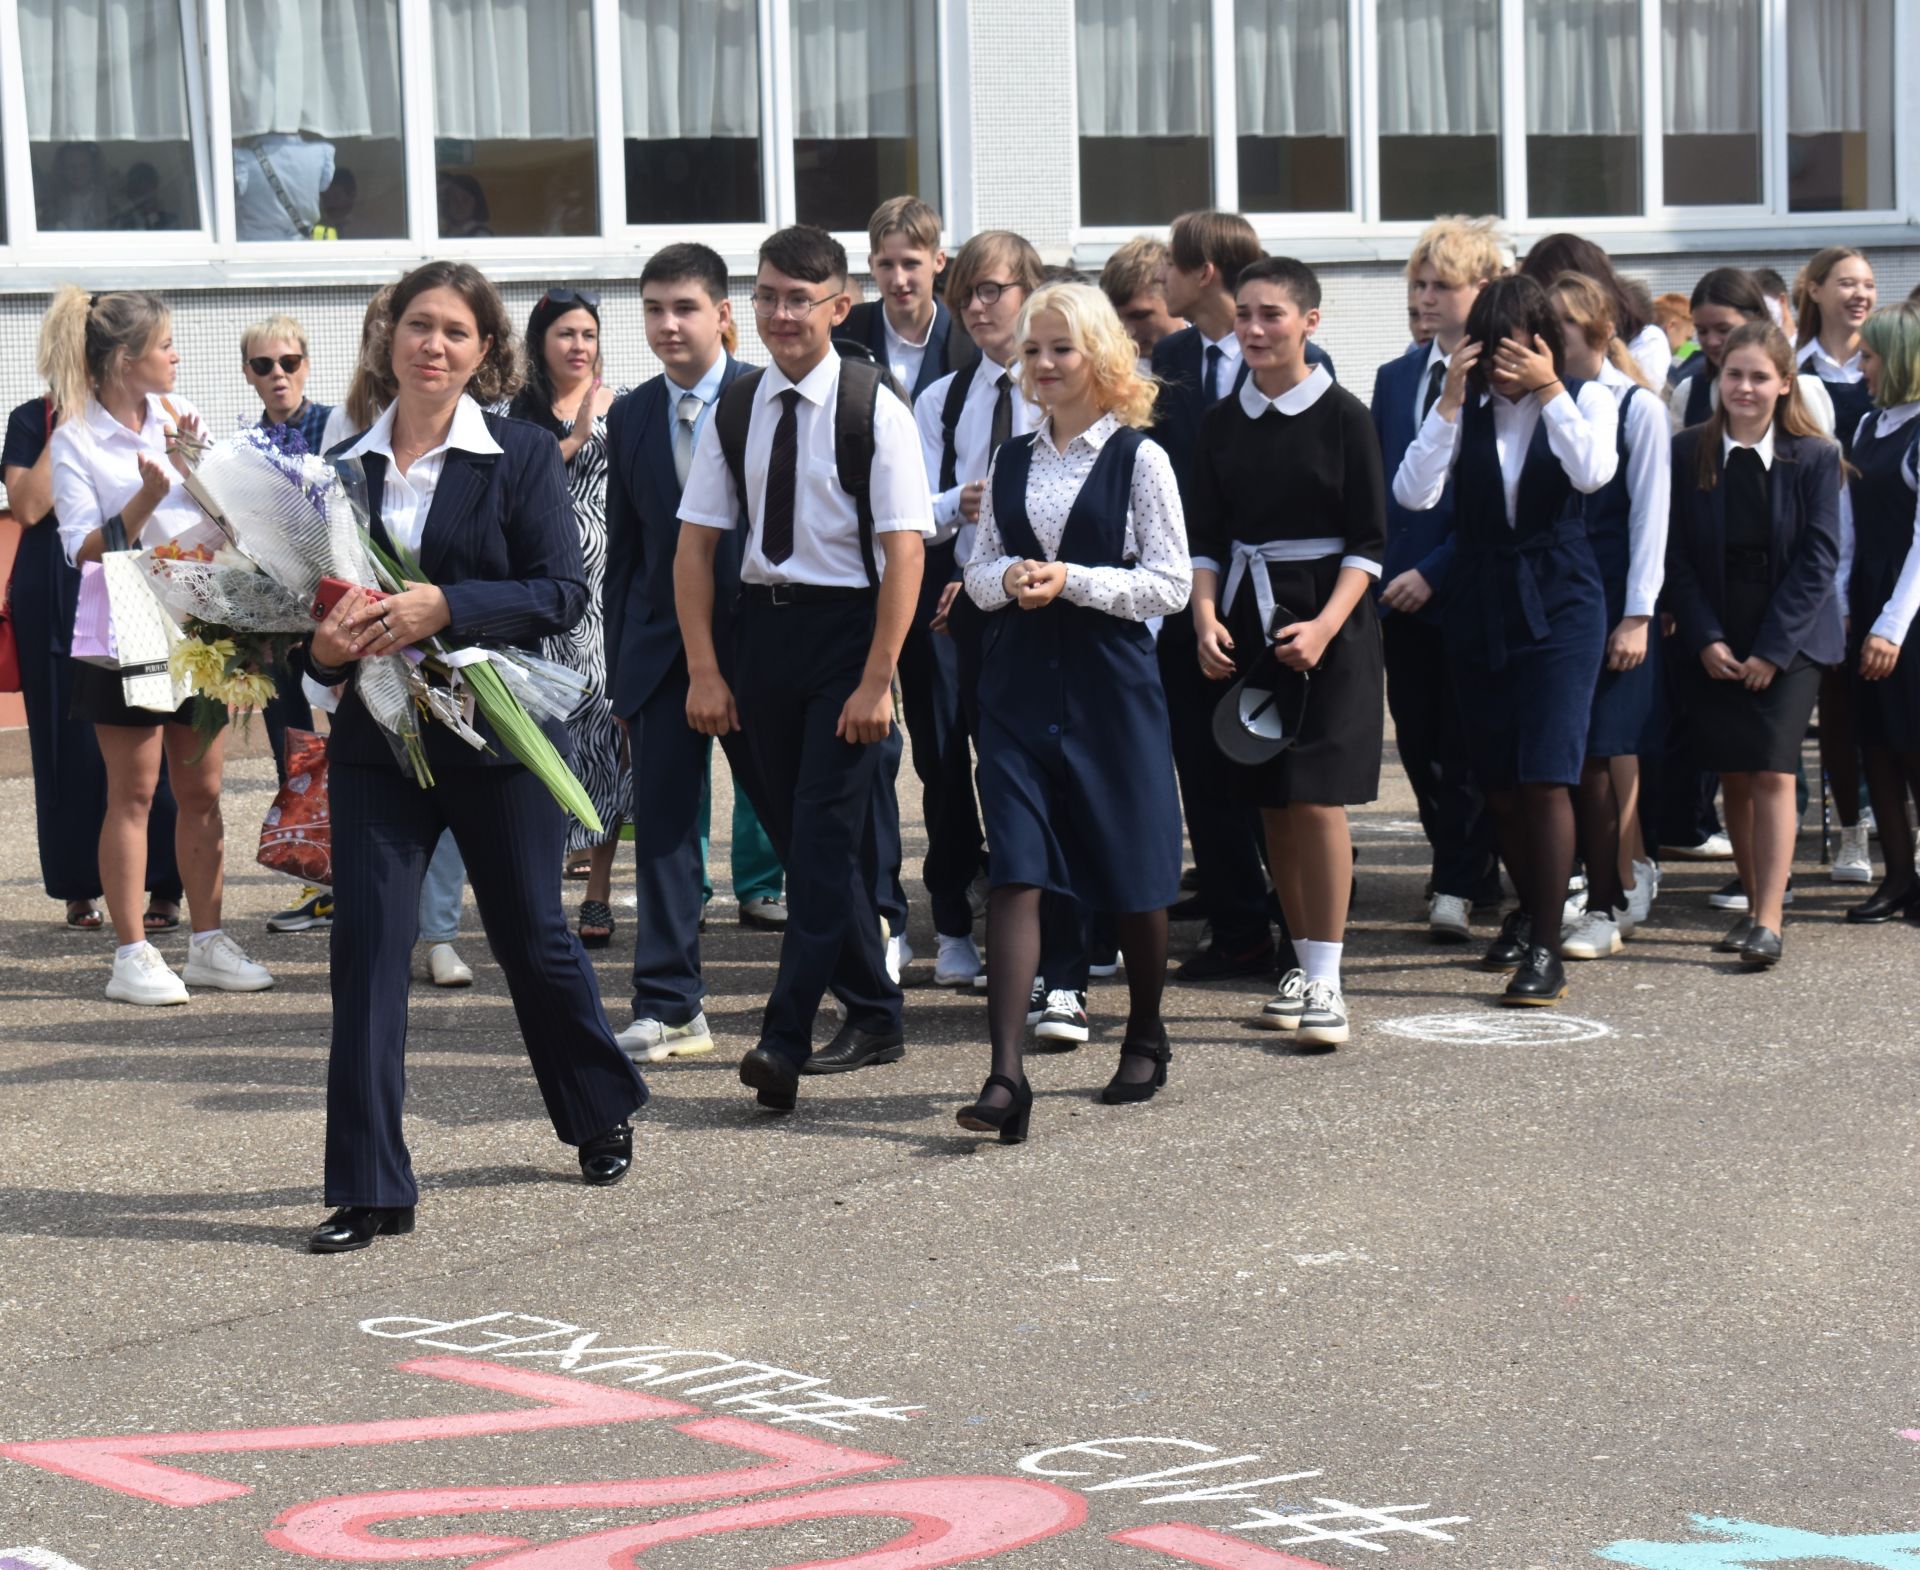 Камско-Полянская школа № 2 открыла свои двери для всех школьников